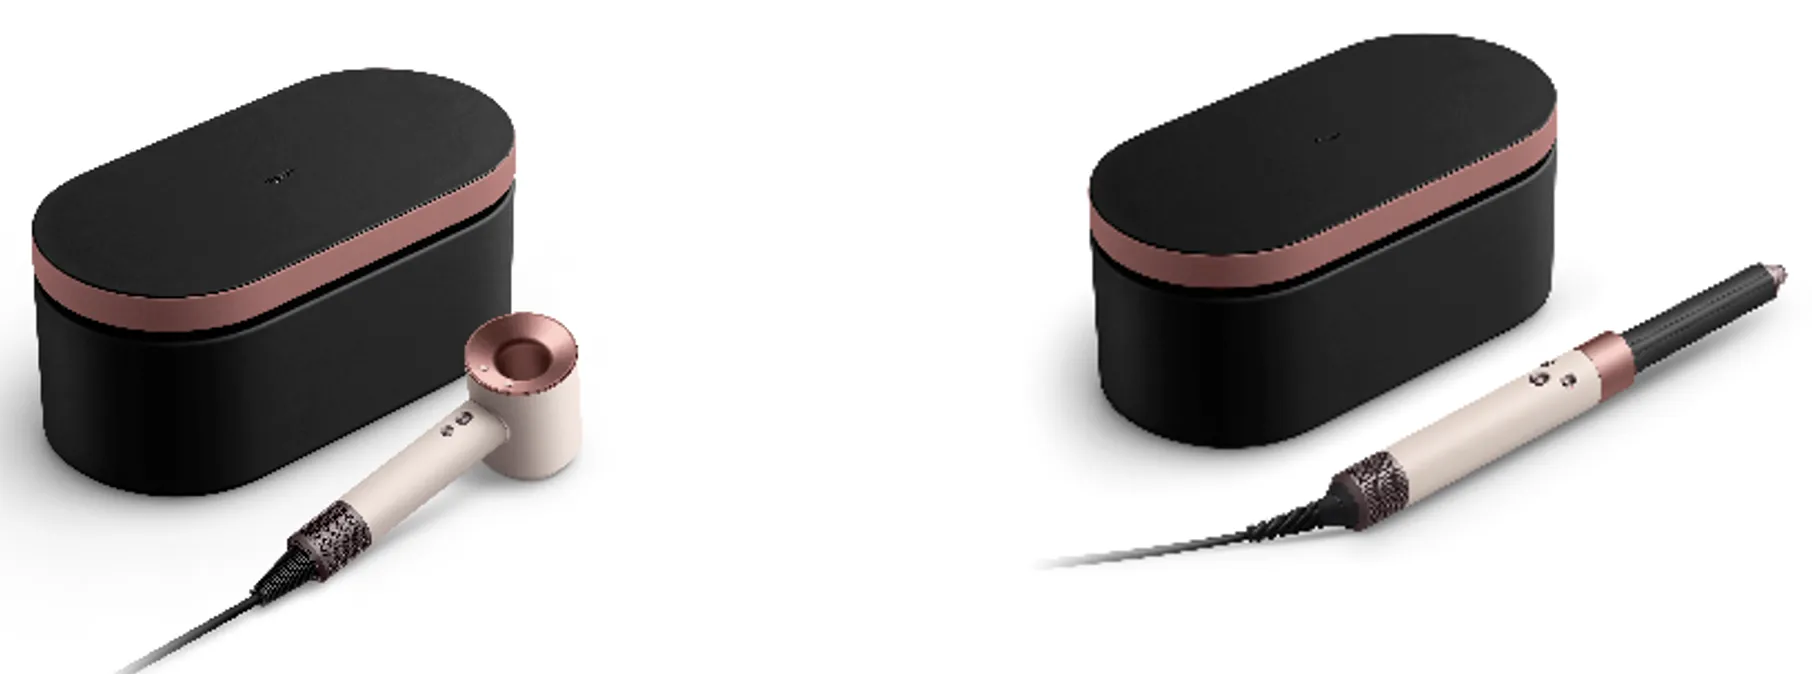 Dyson giới thiệu phiên bản màu đặc biệt Ceramic Pink/Rose Gold cho dòng sản phẩm Chăm sóc tóc